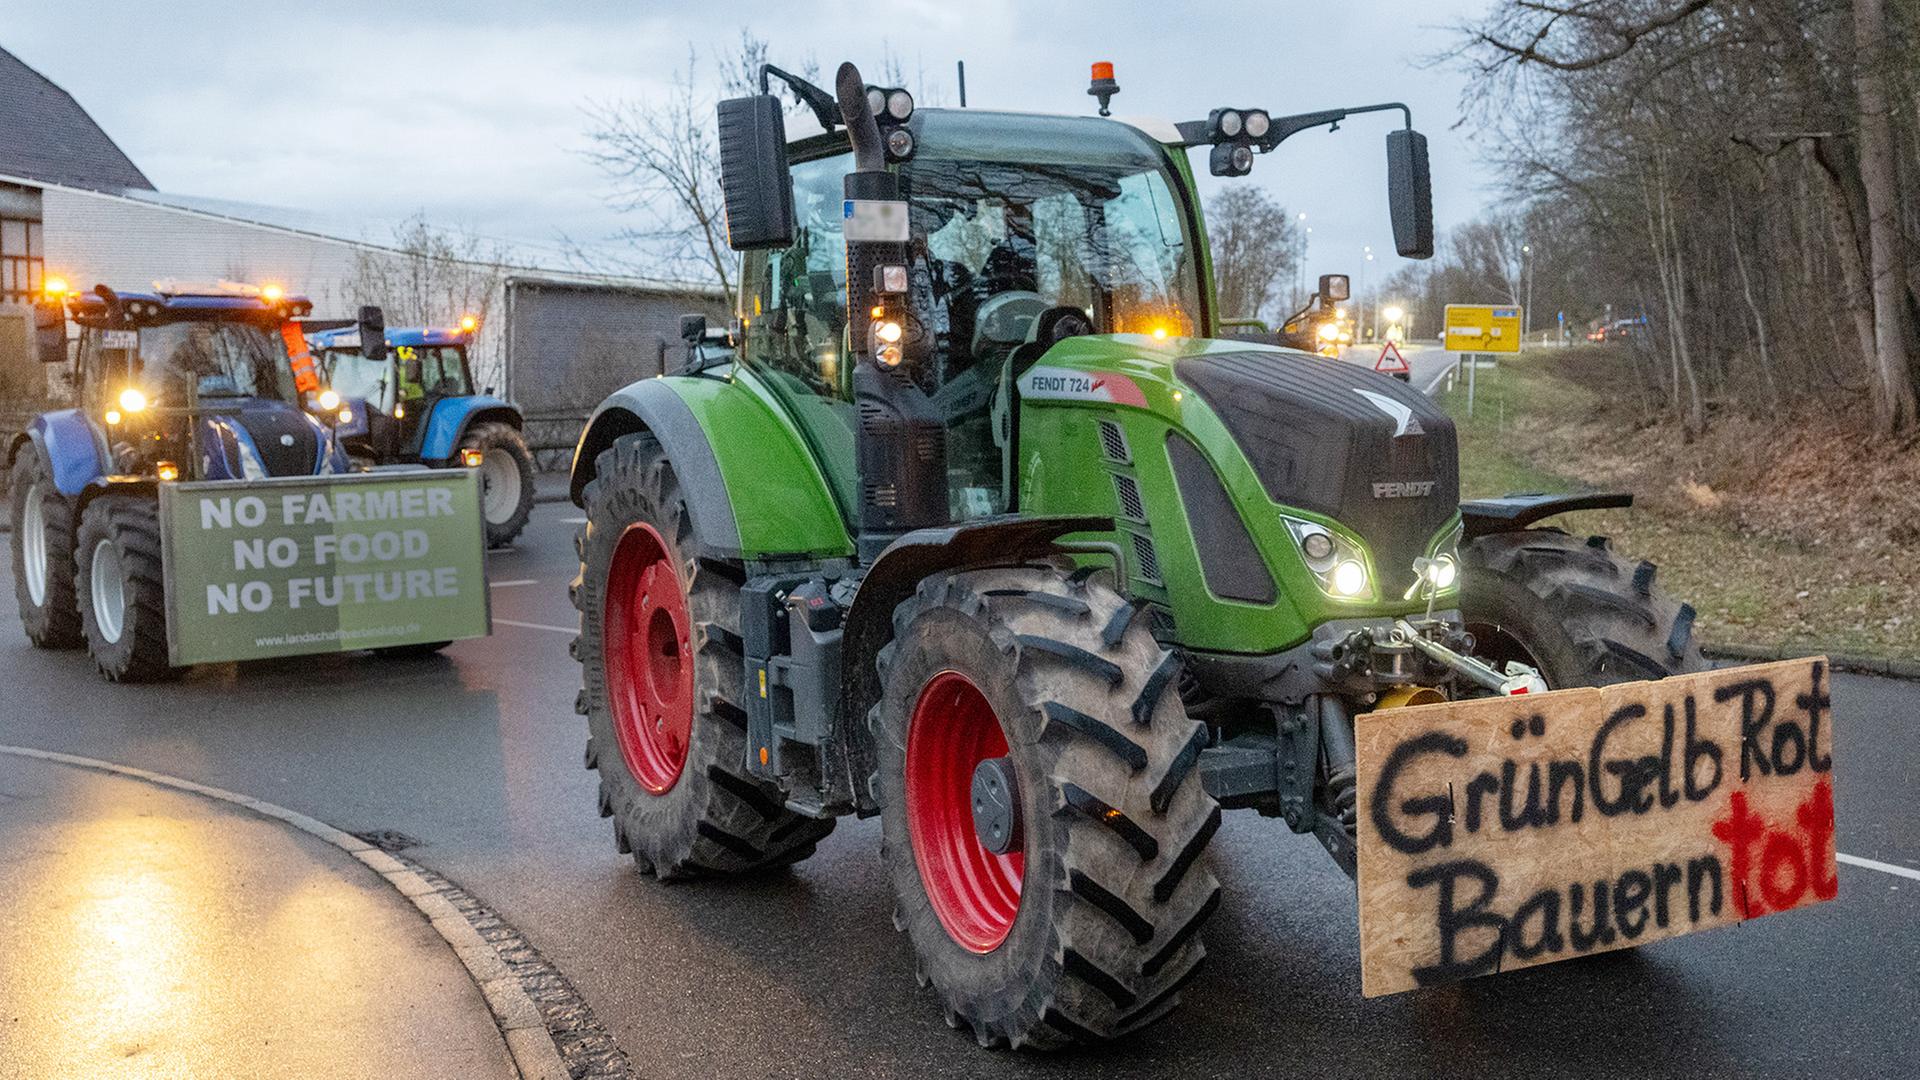 Ein großer Traktor während eines Protests von Bauern, an dessen Front ein Schild angebracht ist mit der Aufschrift: "Grün Gelb Rot. Bauern tot"